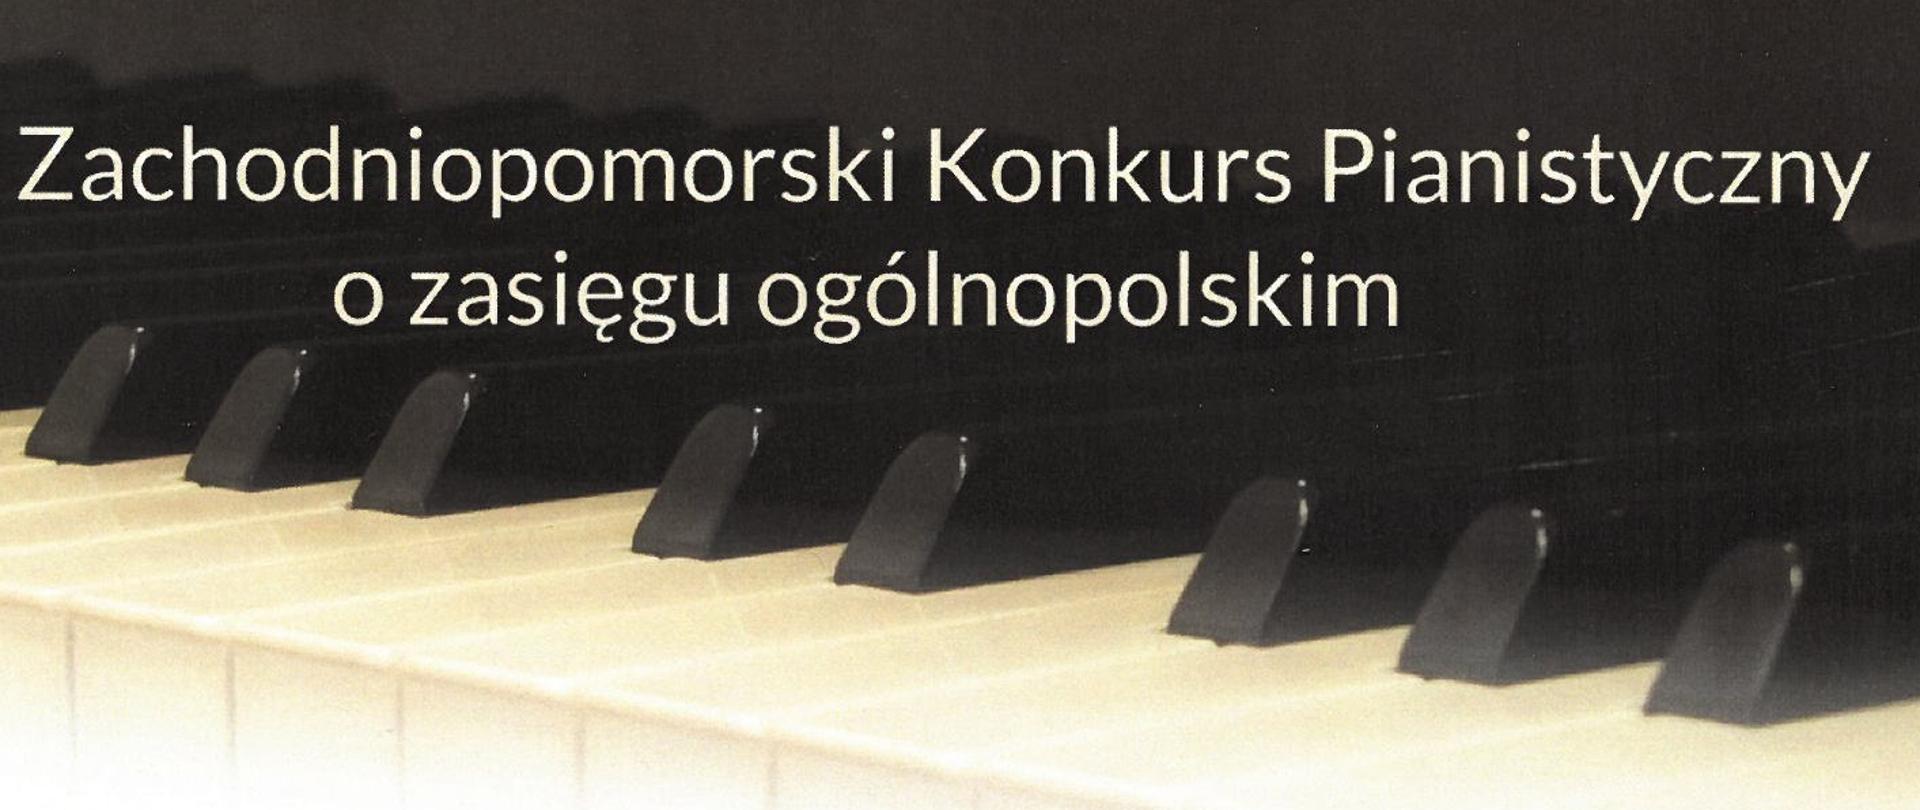 W górnej części Dyplomu znajduje się napis VII Zachodniopomorski Konkurs Pianistyczny o zasięgu ogólnopolskim, poniżej informacja, że Jan Kwiatkowski zdobył Nagrodę Marszałka Województwa Zachodniopomorskiego w wysokości 1 500 zł.